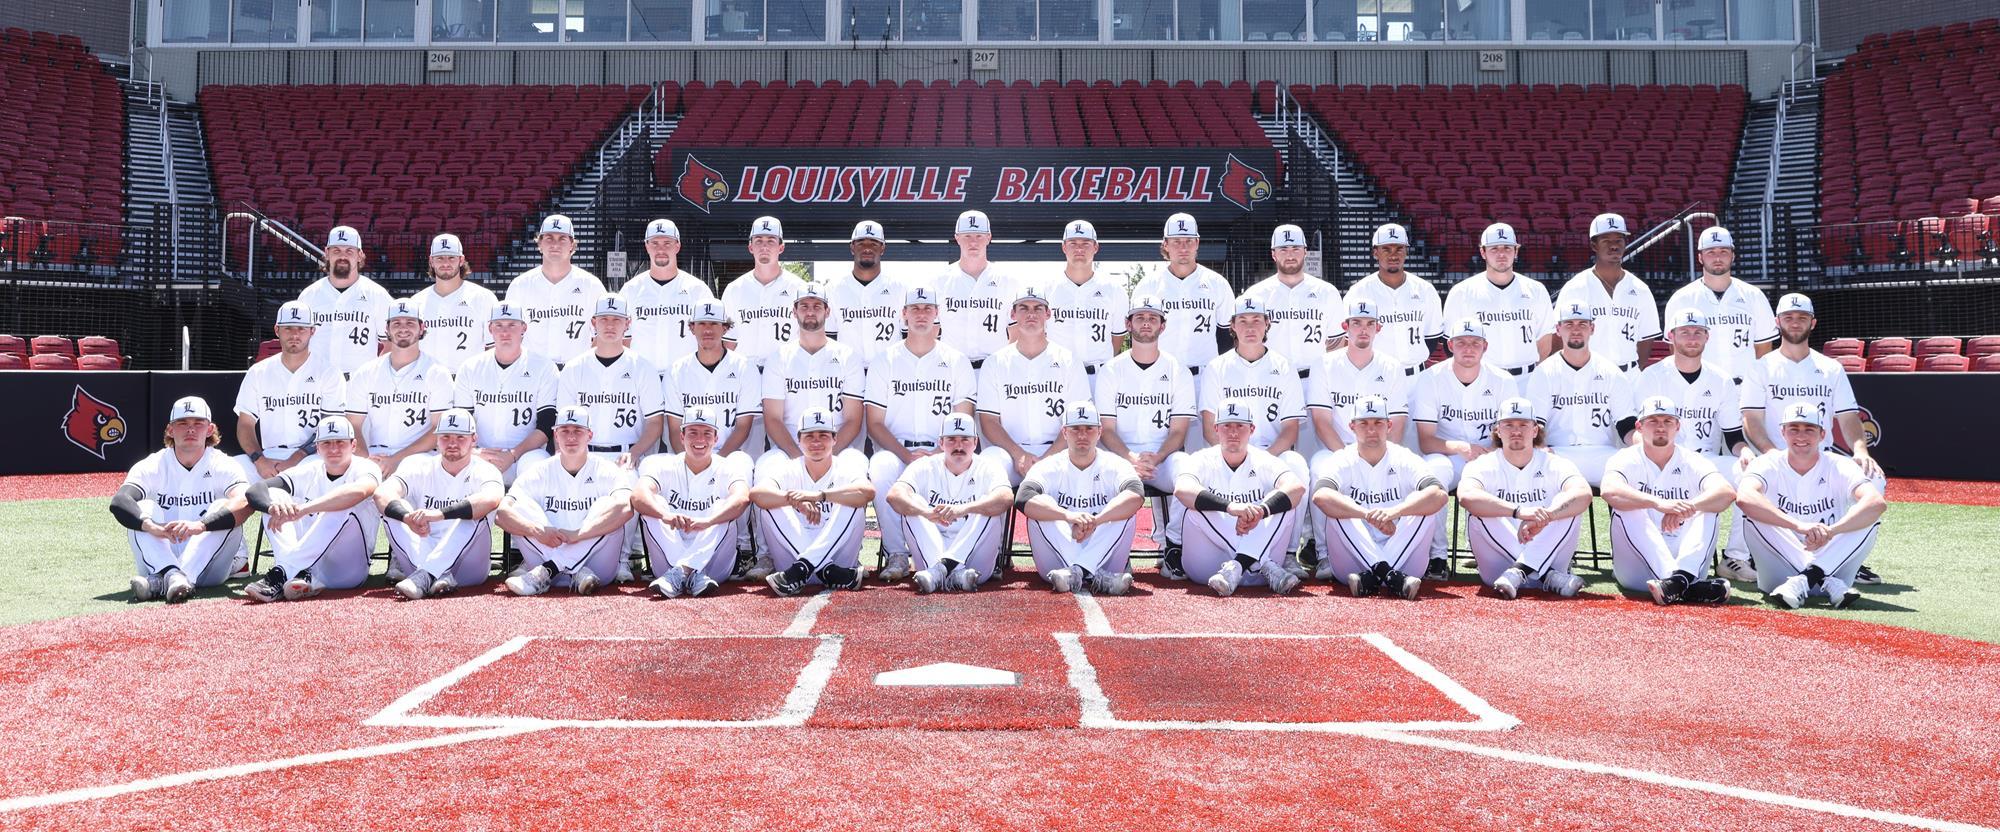 University of Louisville baseball team